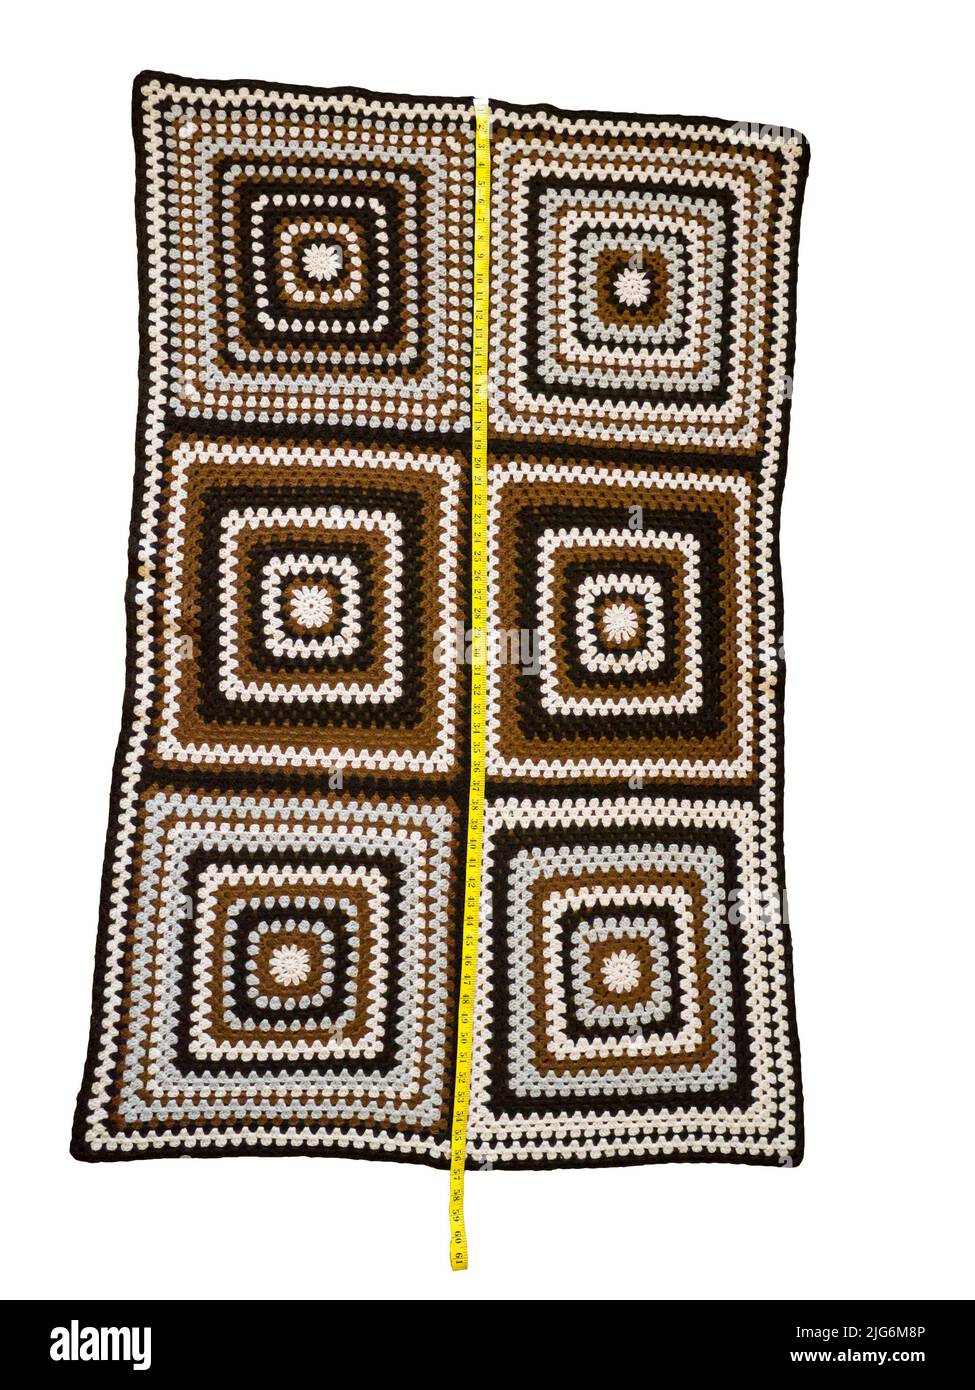 Knitted handmade blanket. Stock Photo